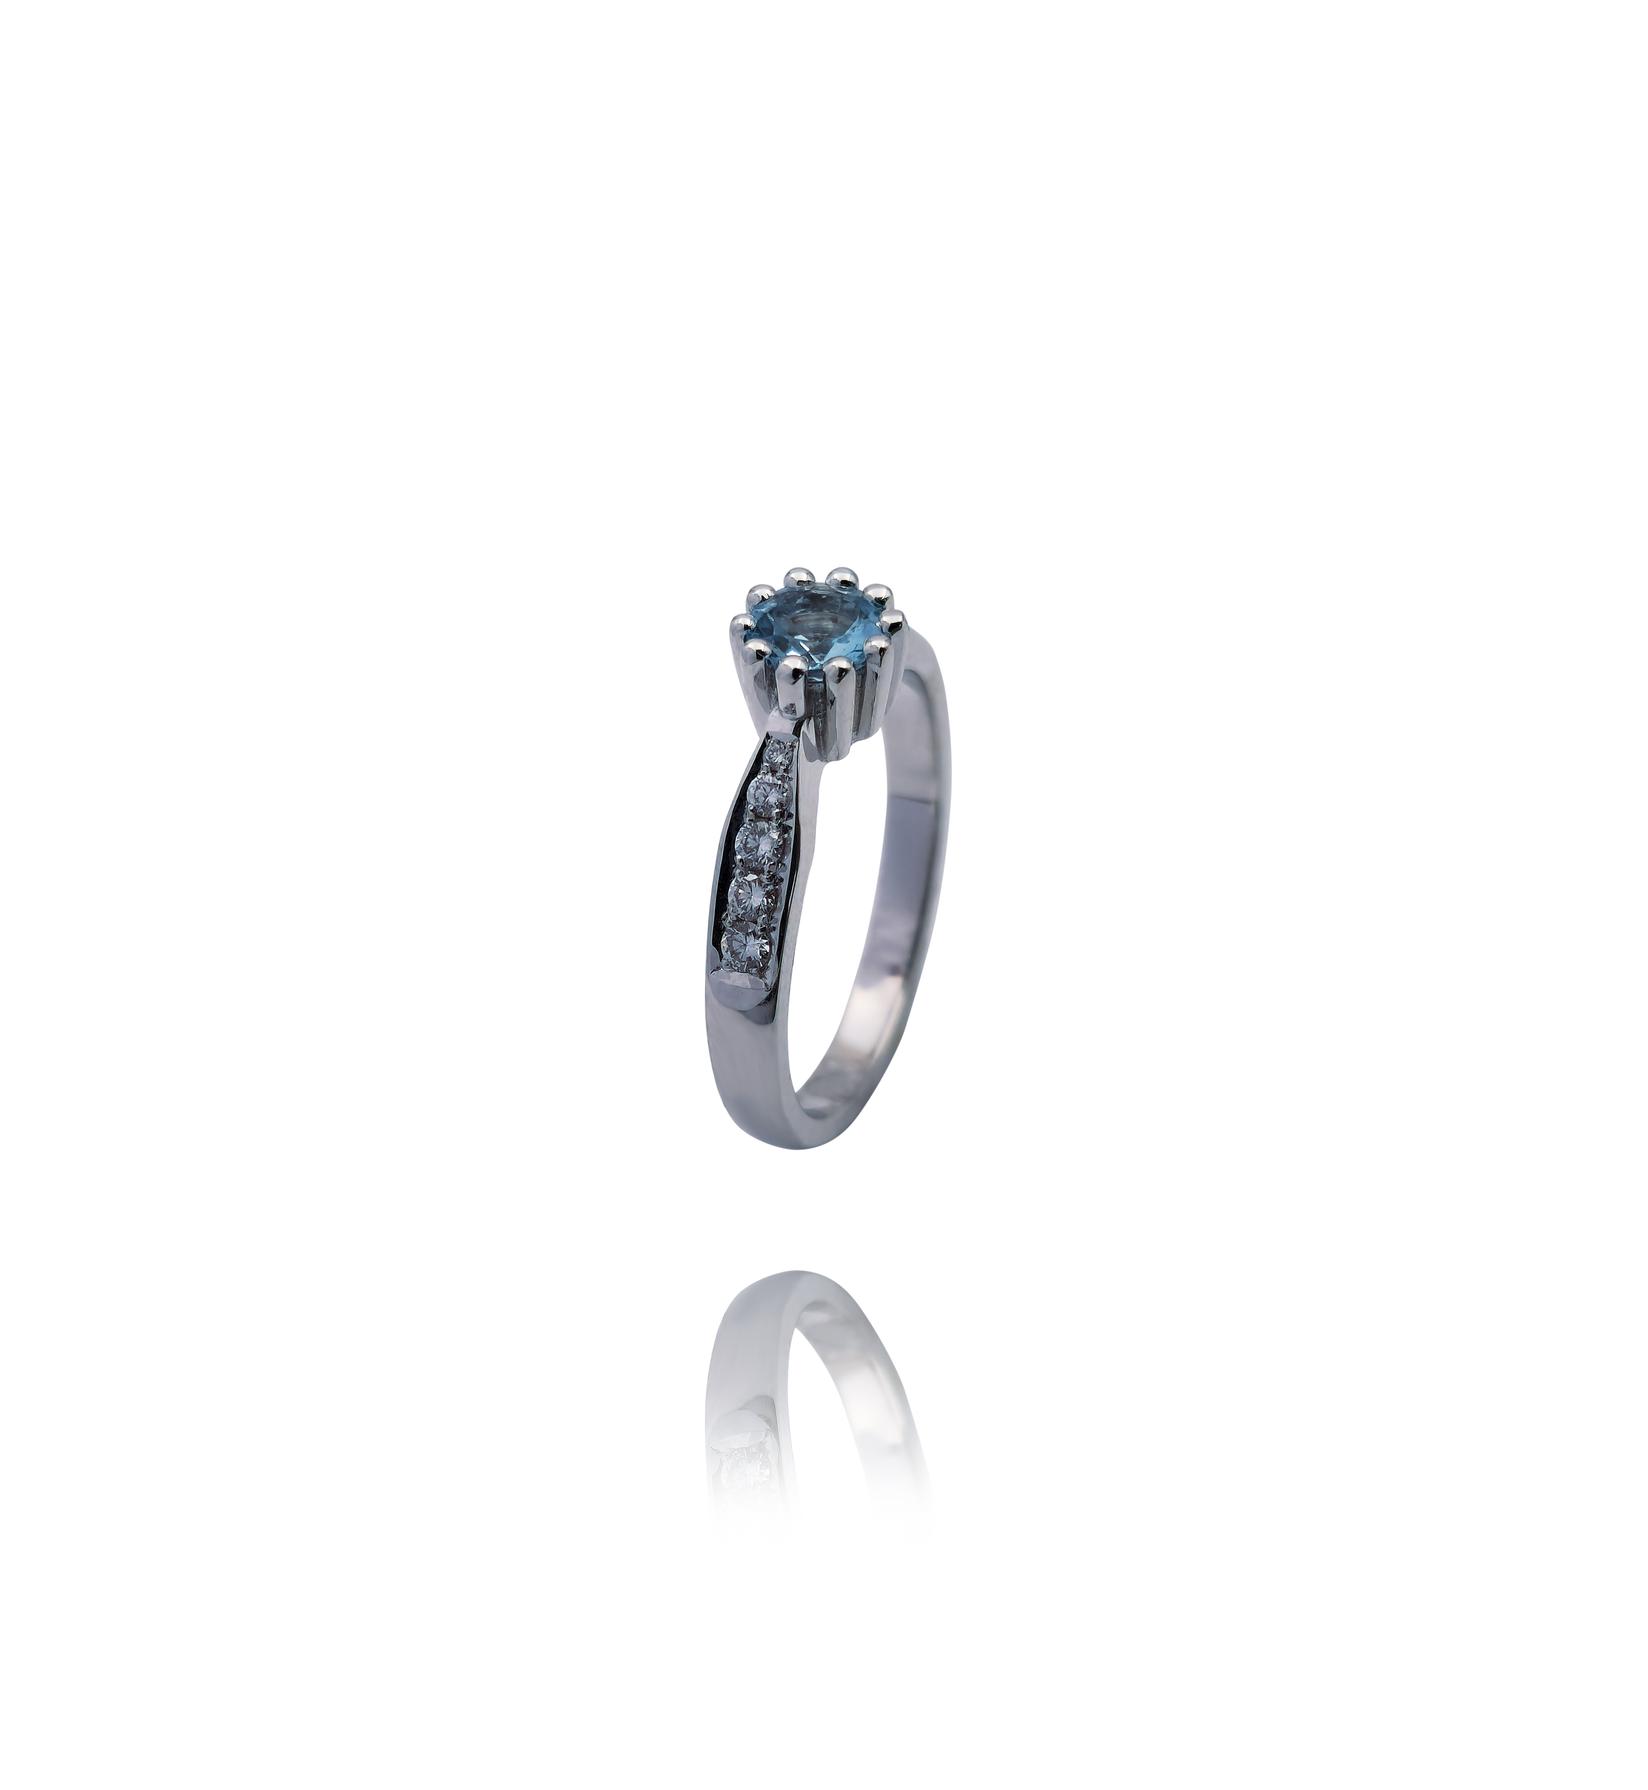 Selected image for Ženski prsten od Belog zlata sa Brilijantima i Akvamarinom, 585, 20mm